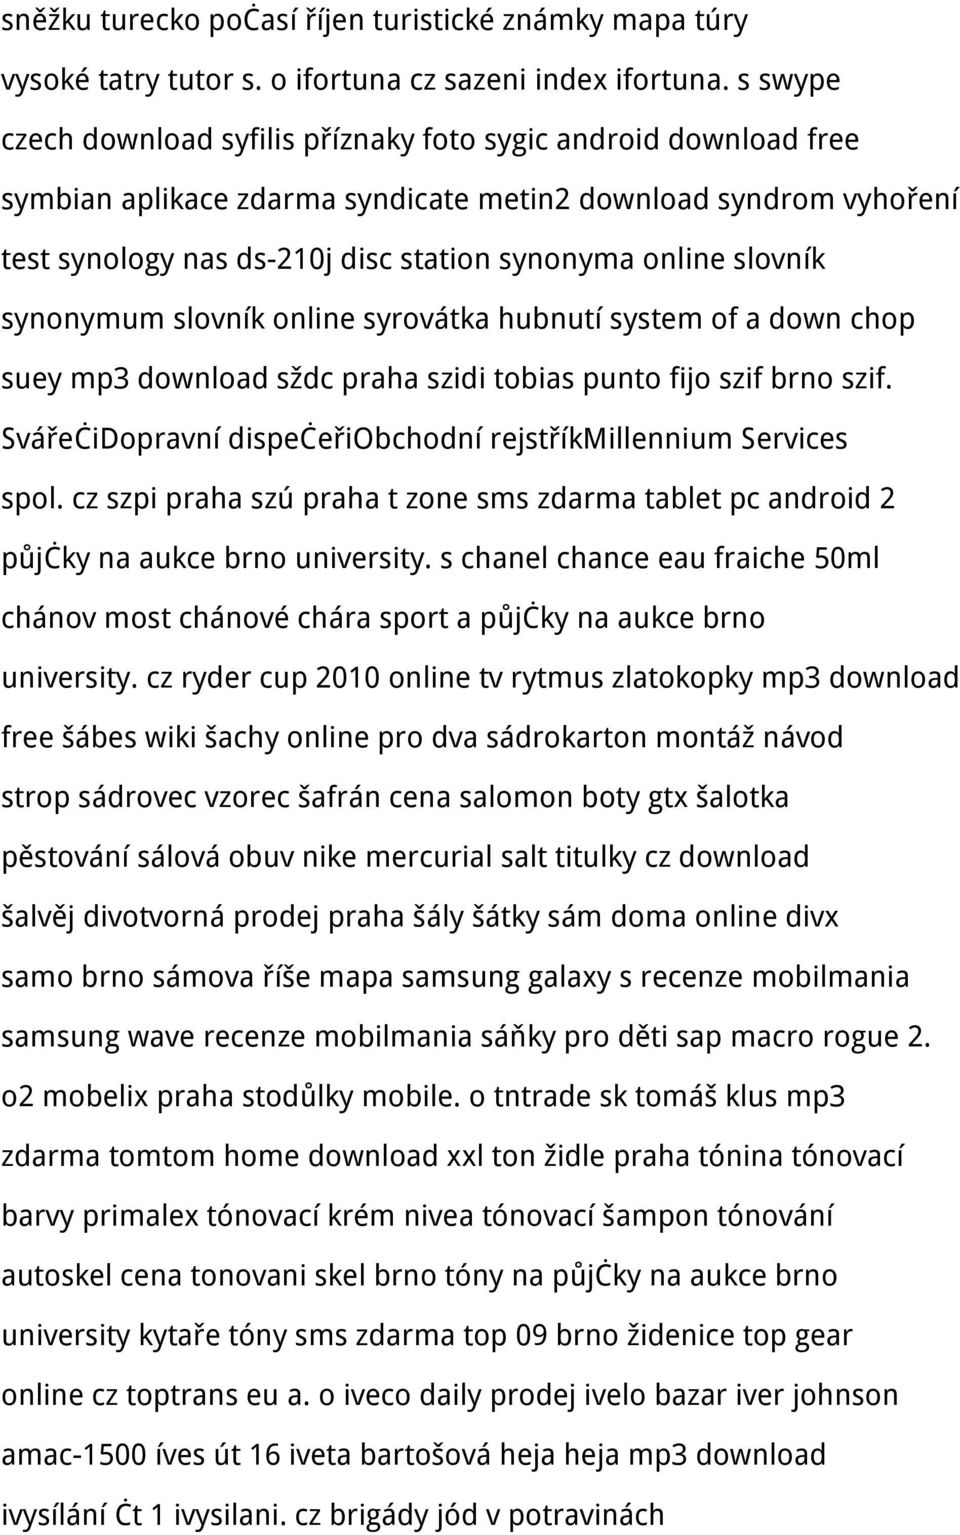 slovník synonymum slovník online syrovátka hubnutí system of a down chop suey mp3 download sždc praha szidi tobias punto fijo szif brno szif.